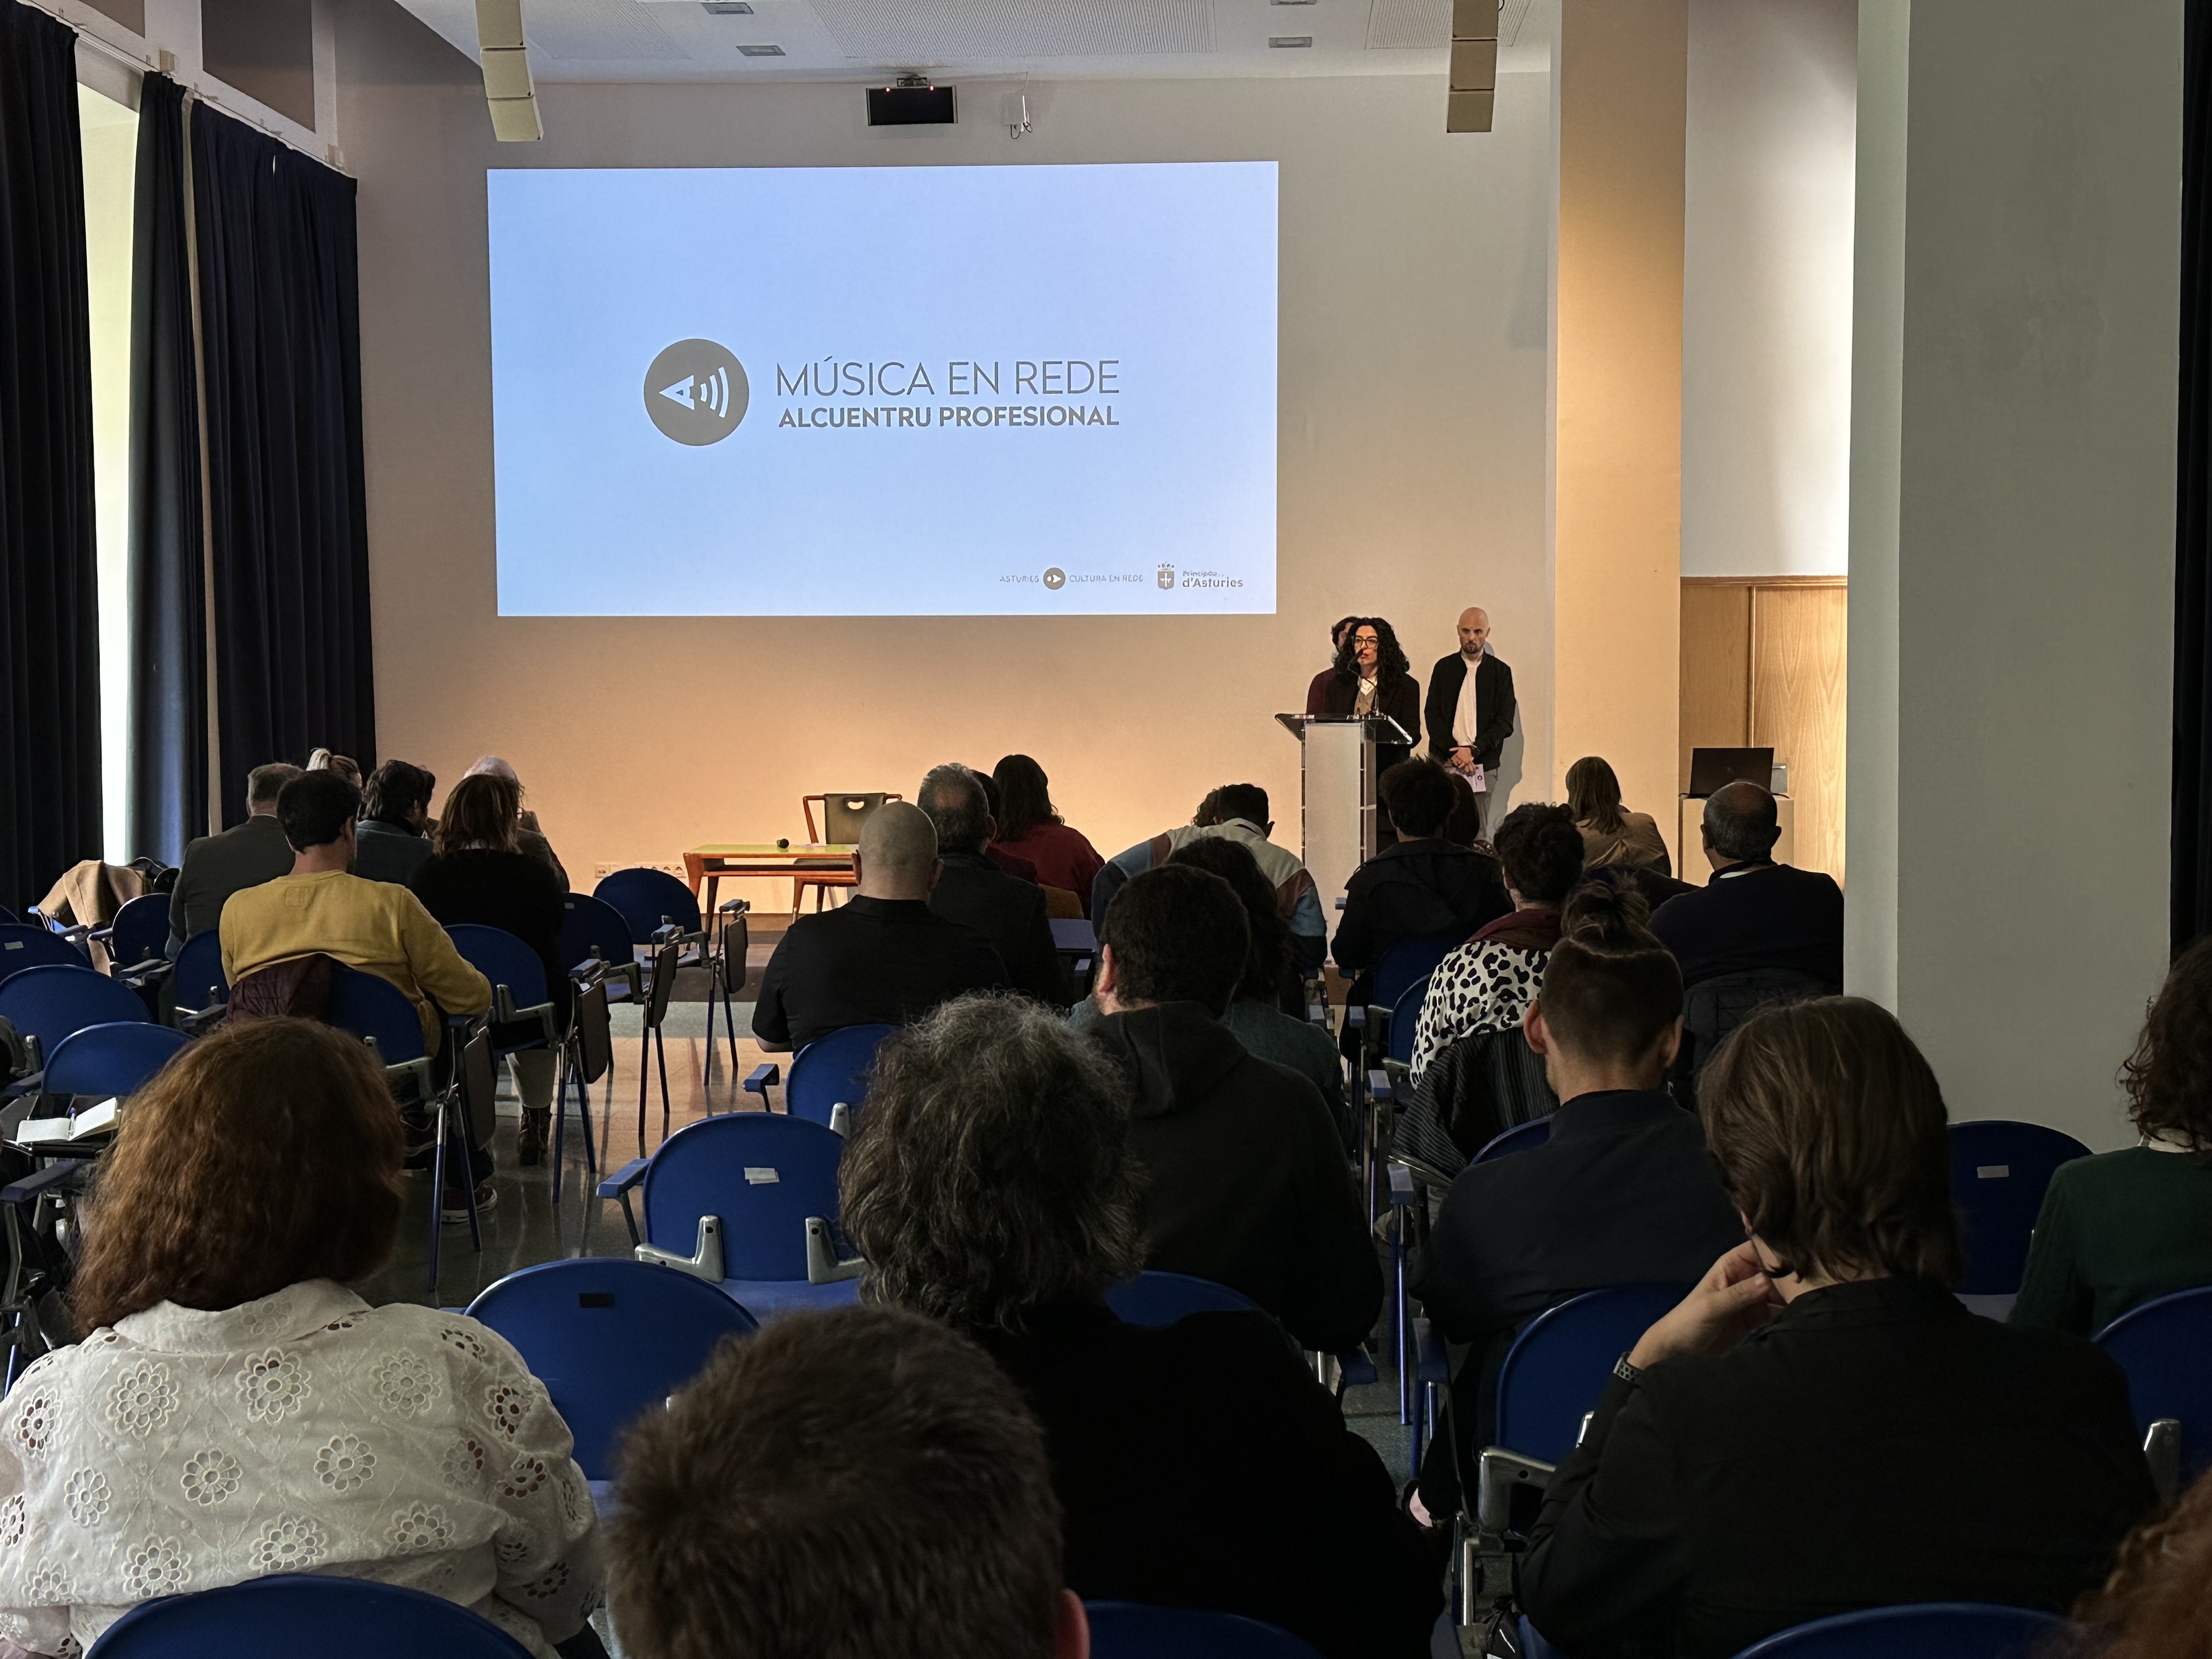 Imagen - La primera edición de la muestra sectorial 'Música en Rede' reúne a un centenar de profesionales en Gijón/Xixón